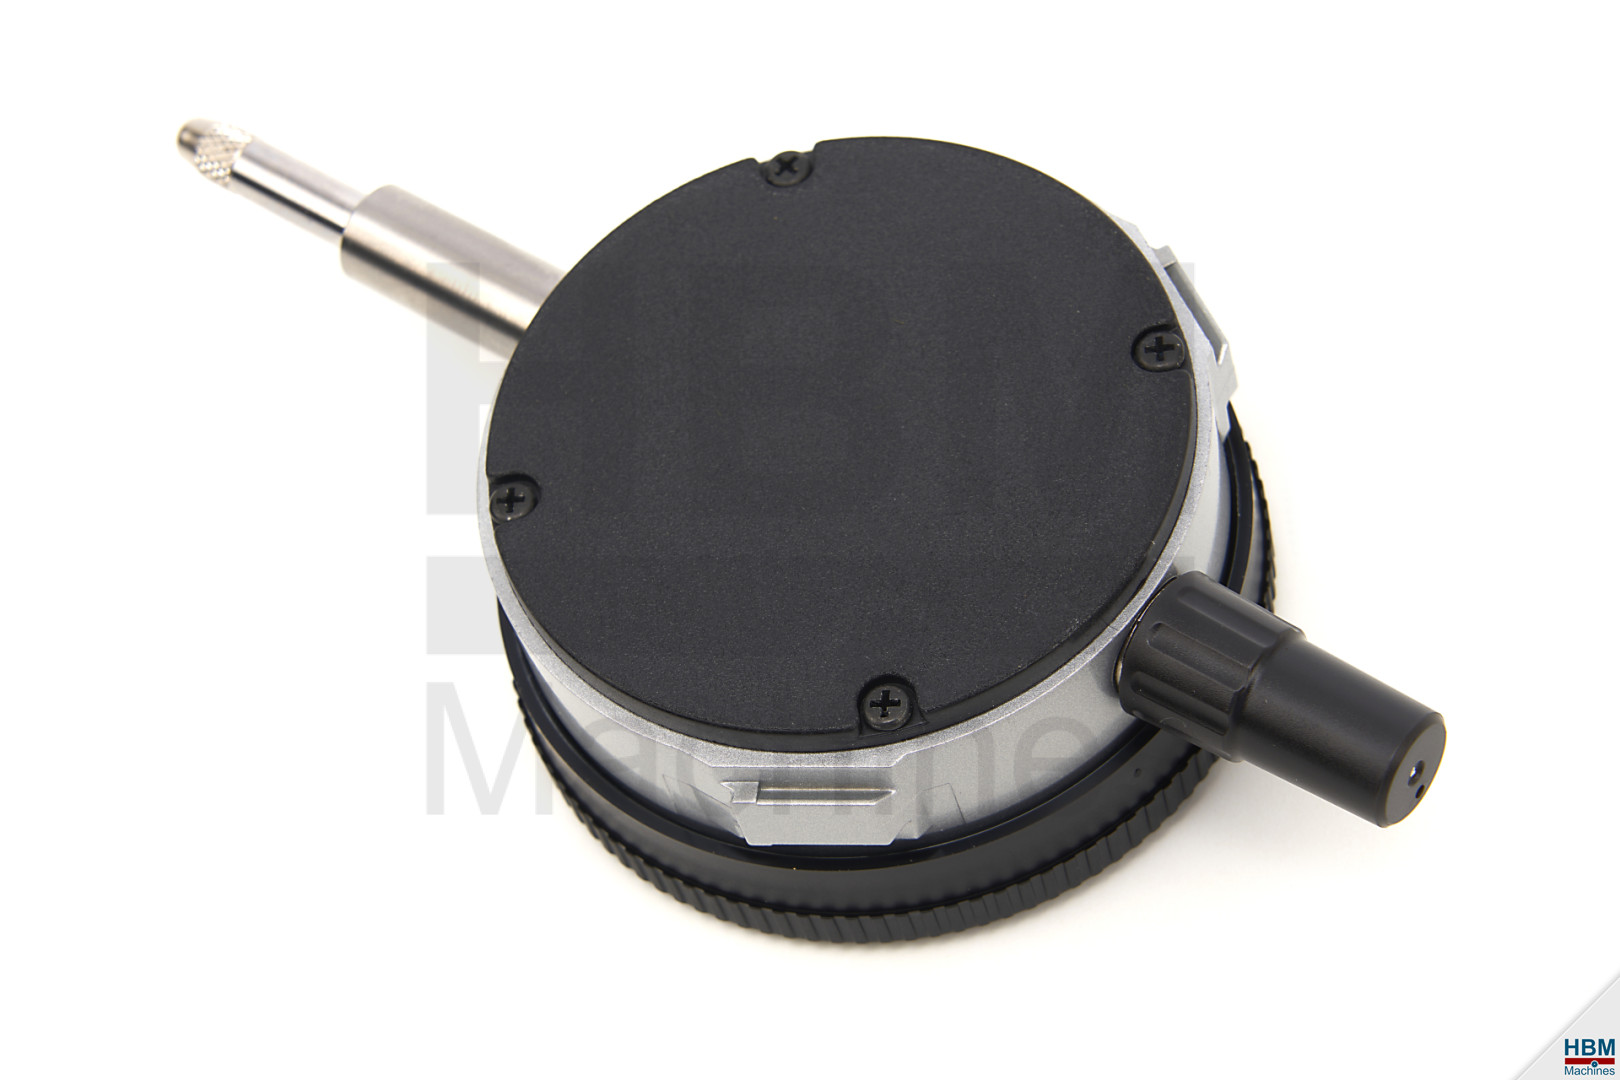 Comparateur à cadran 0-10 mm Outil de précision professionnel